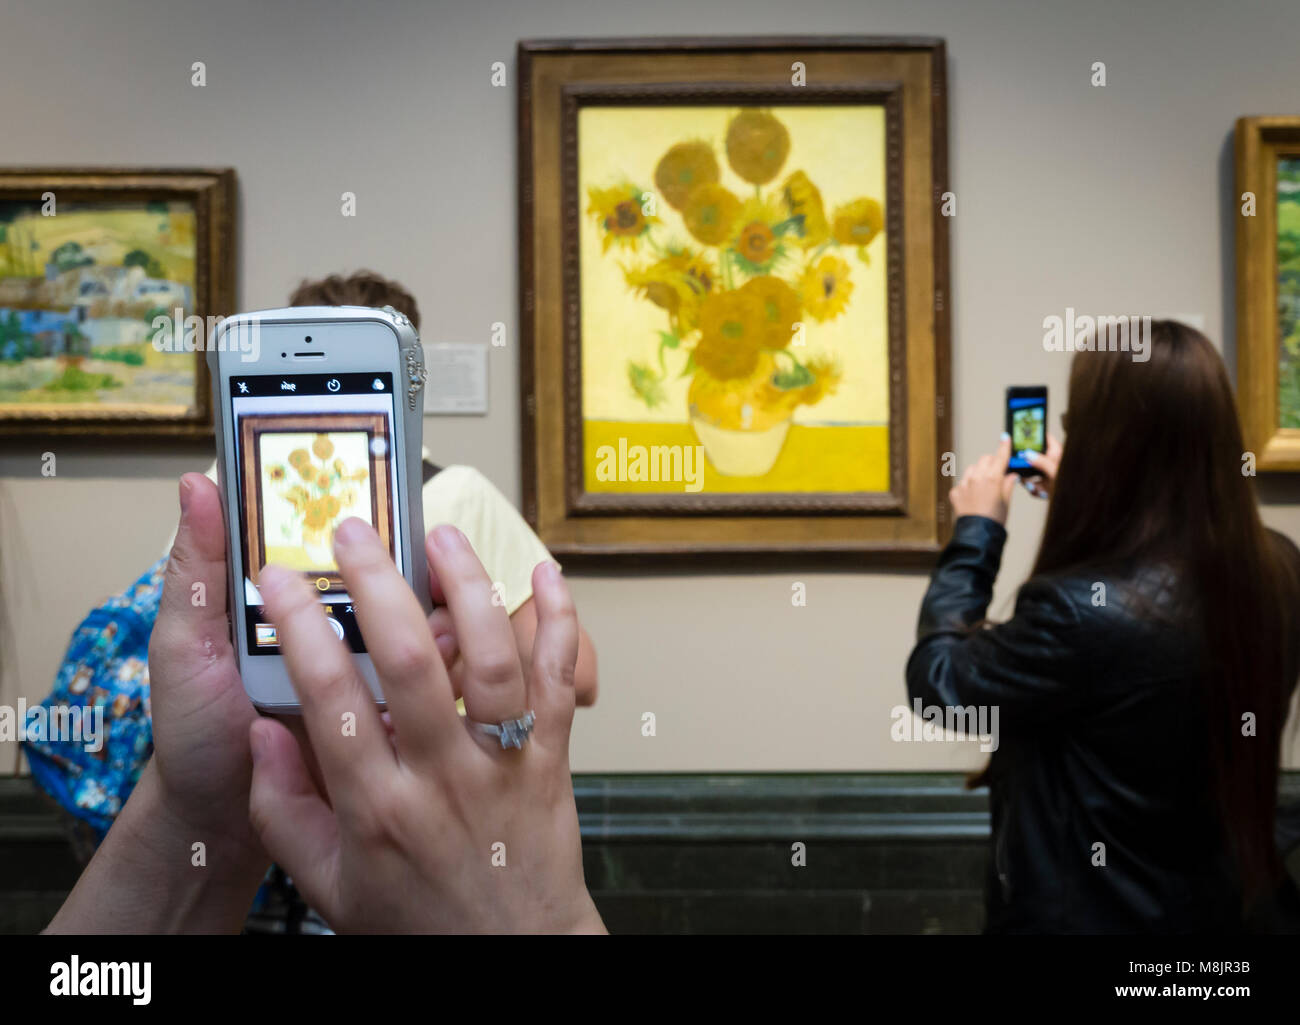 Londres, Reino Unido - 1 Sep 2017: Los visitantes de la Galería Nacional de Londres están utilizando sus smartphones para tomar fotografías de Vincent van Gogh's óleo "unflowers', una de las exhibiciones más famosas del museo. Foto de stock